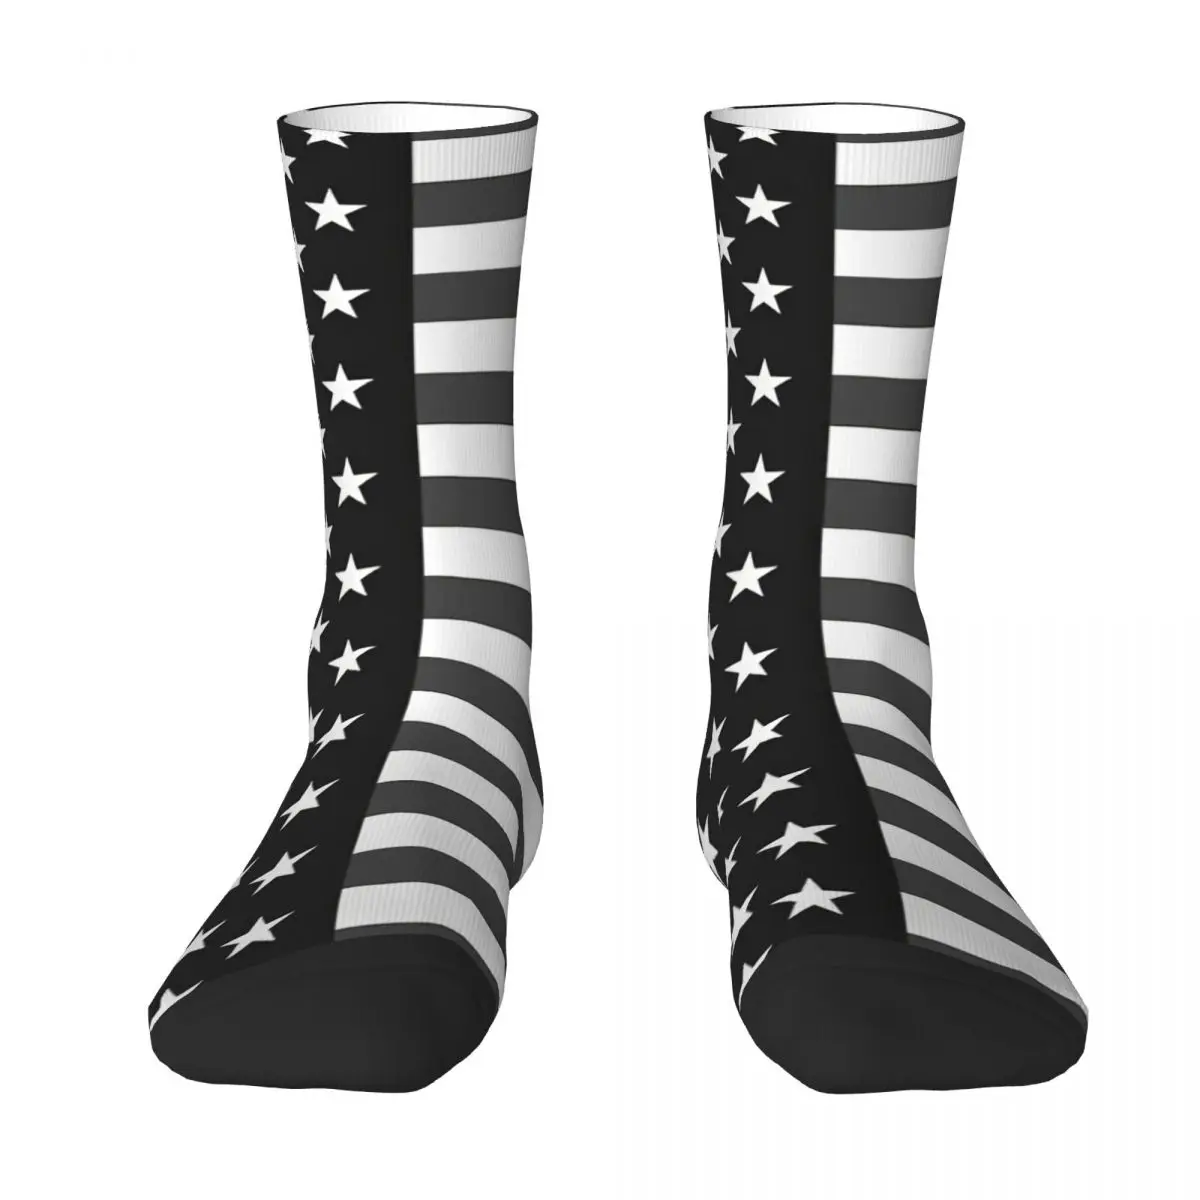 Monochrome USA Flag Adult Socks,Unisex socks,men Socks women Socks